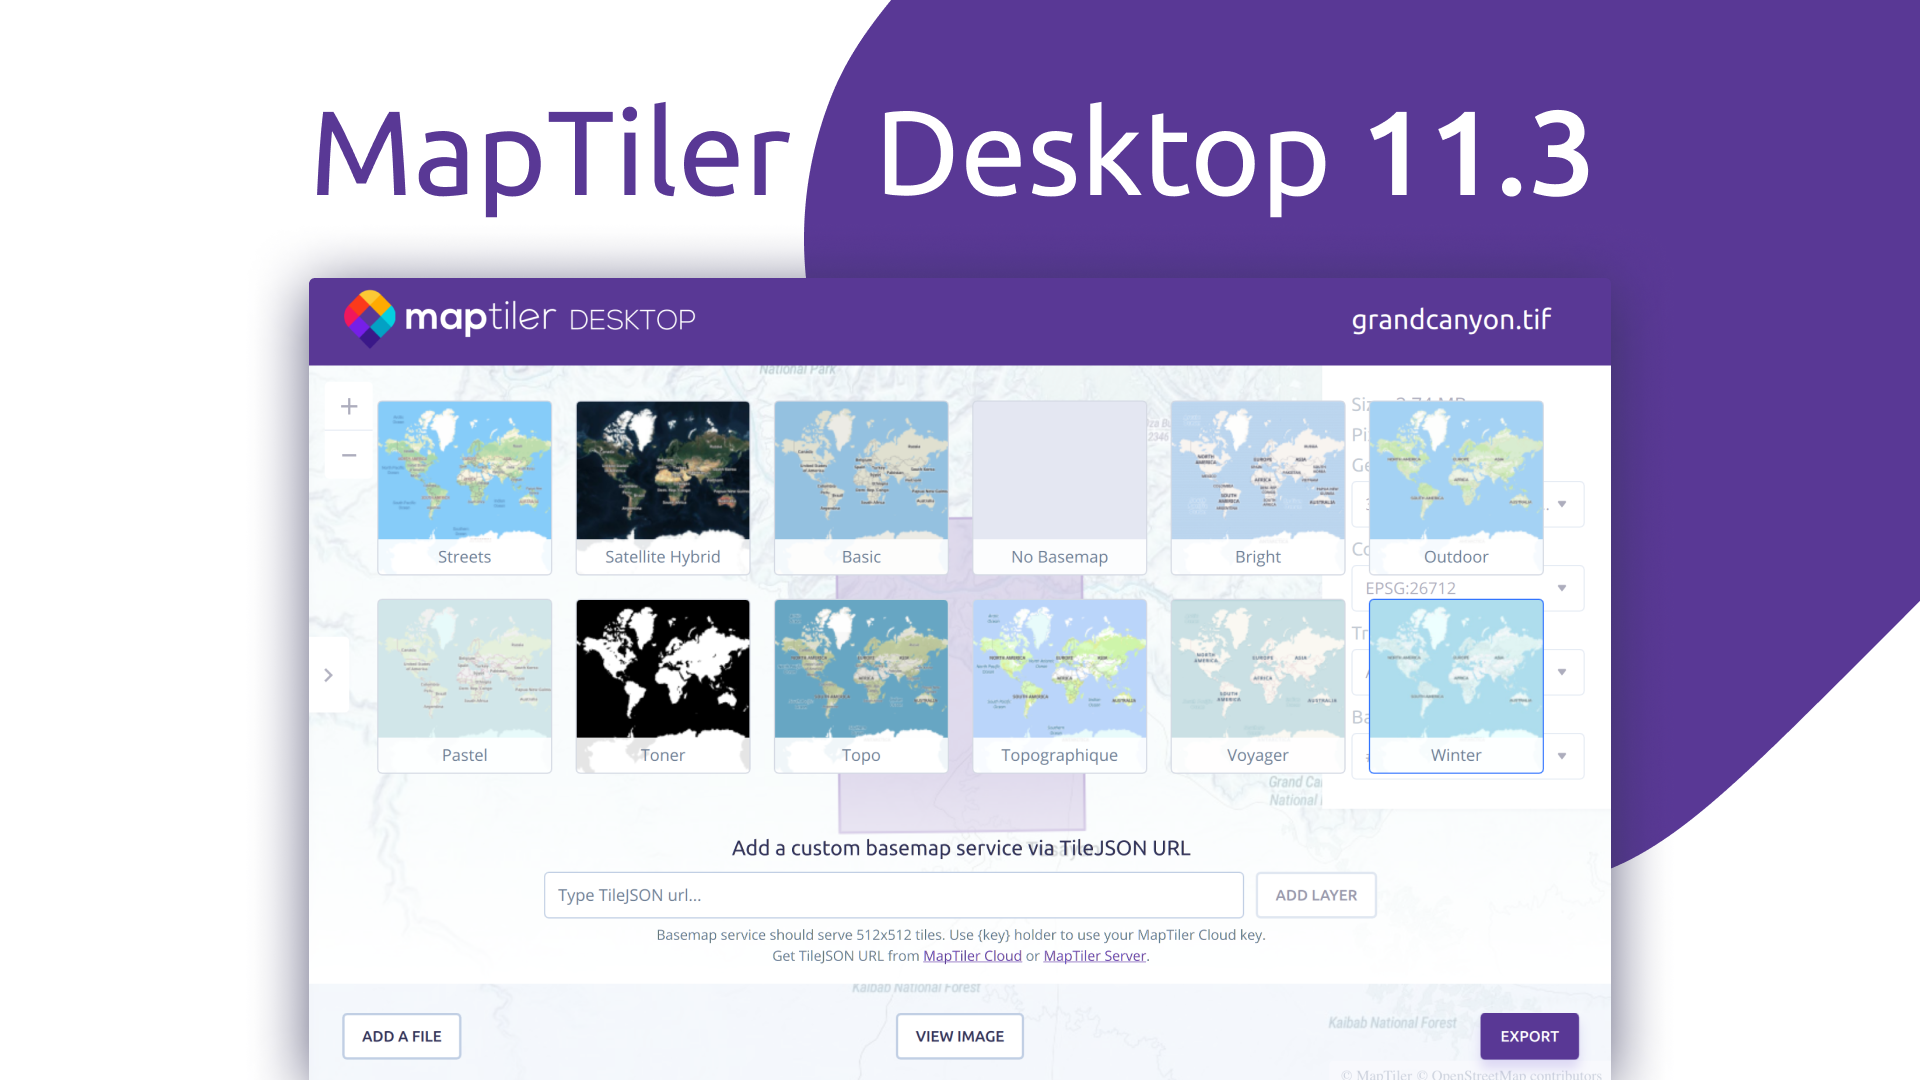 MapTiler Desktop 11.3 brings custom basemaps image